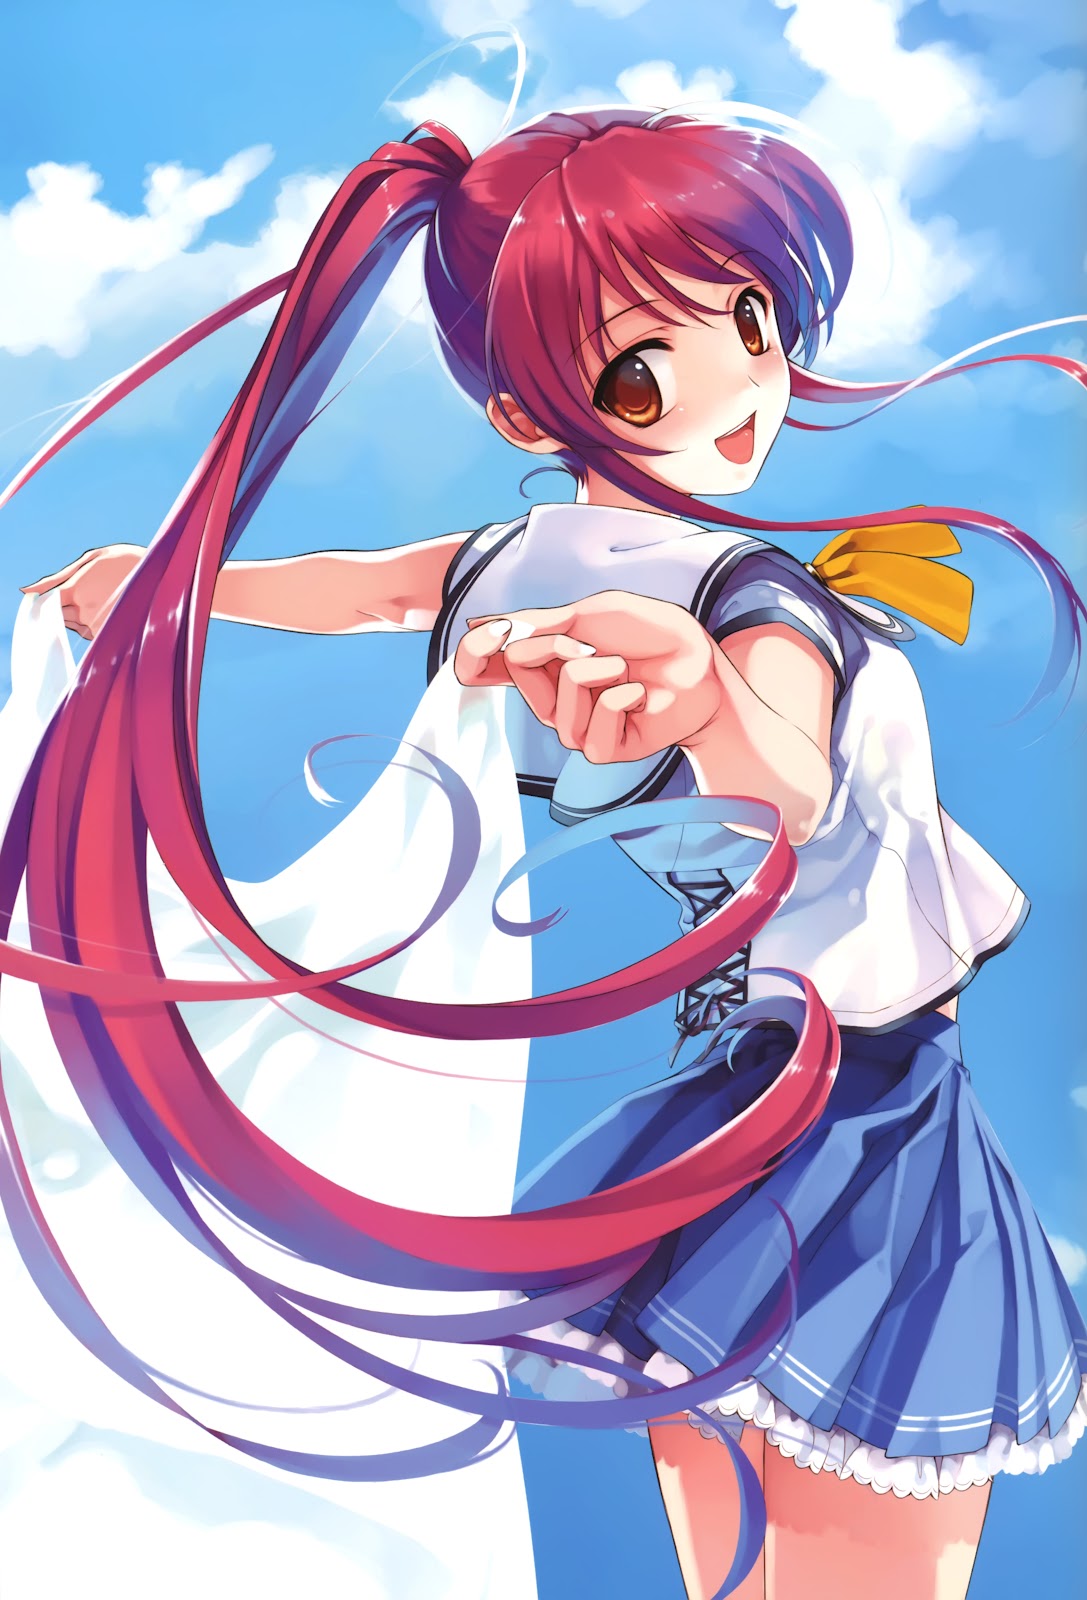 Poze: Anime girl Red Hair